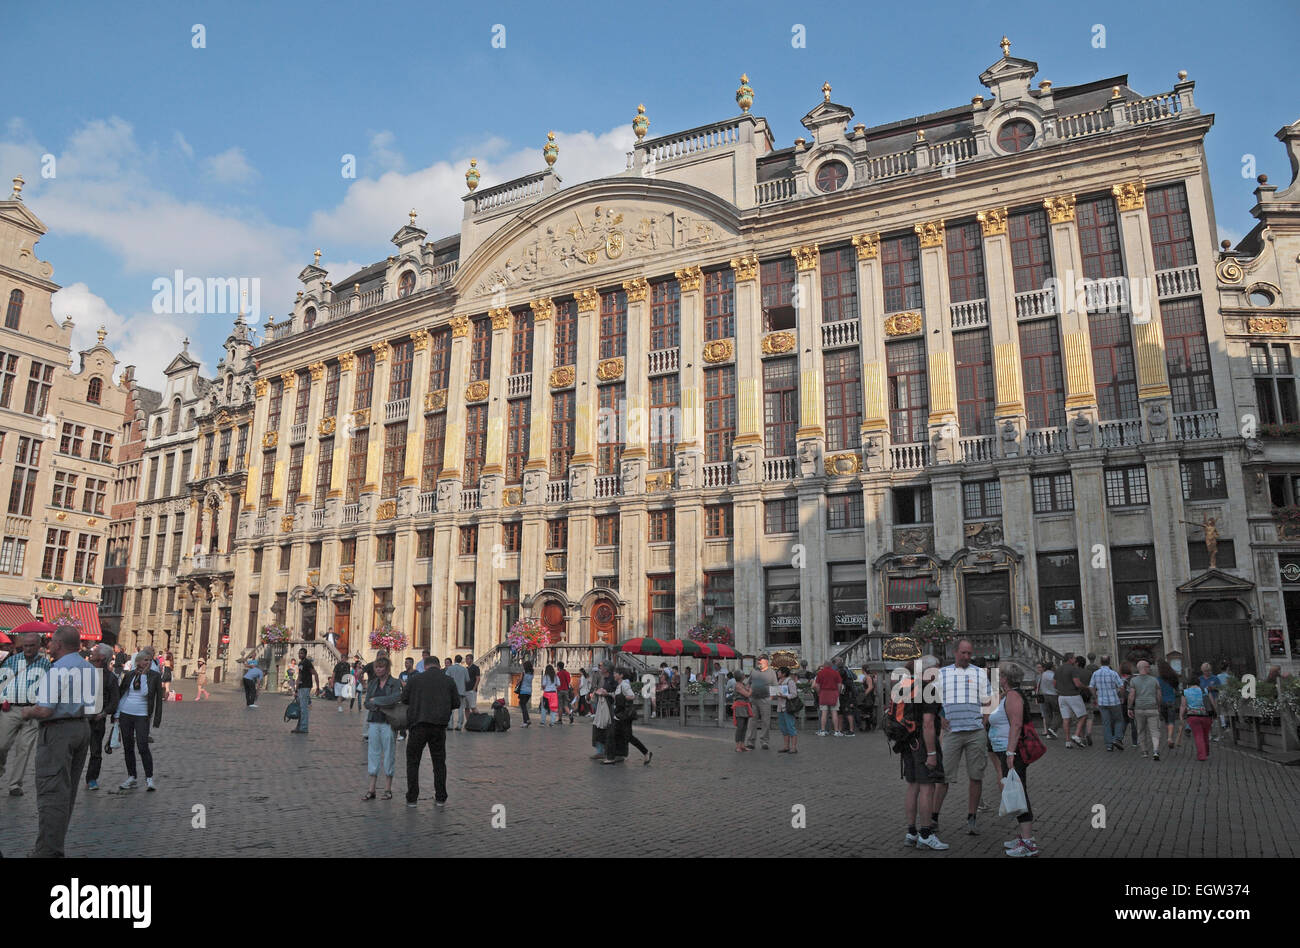 La hermosa La Maison des Ducs de Brabant (Casa de los Duques de Brabante), Grote Markt (Grand Place), Bruselas, Bélgica Foto de stock